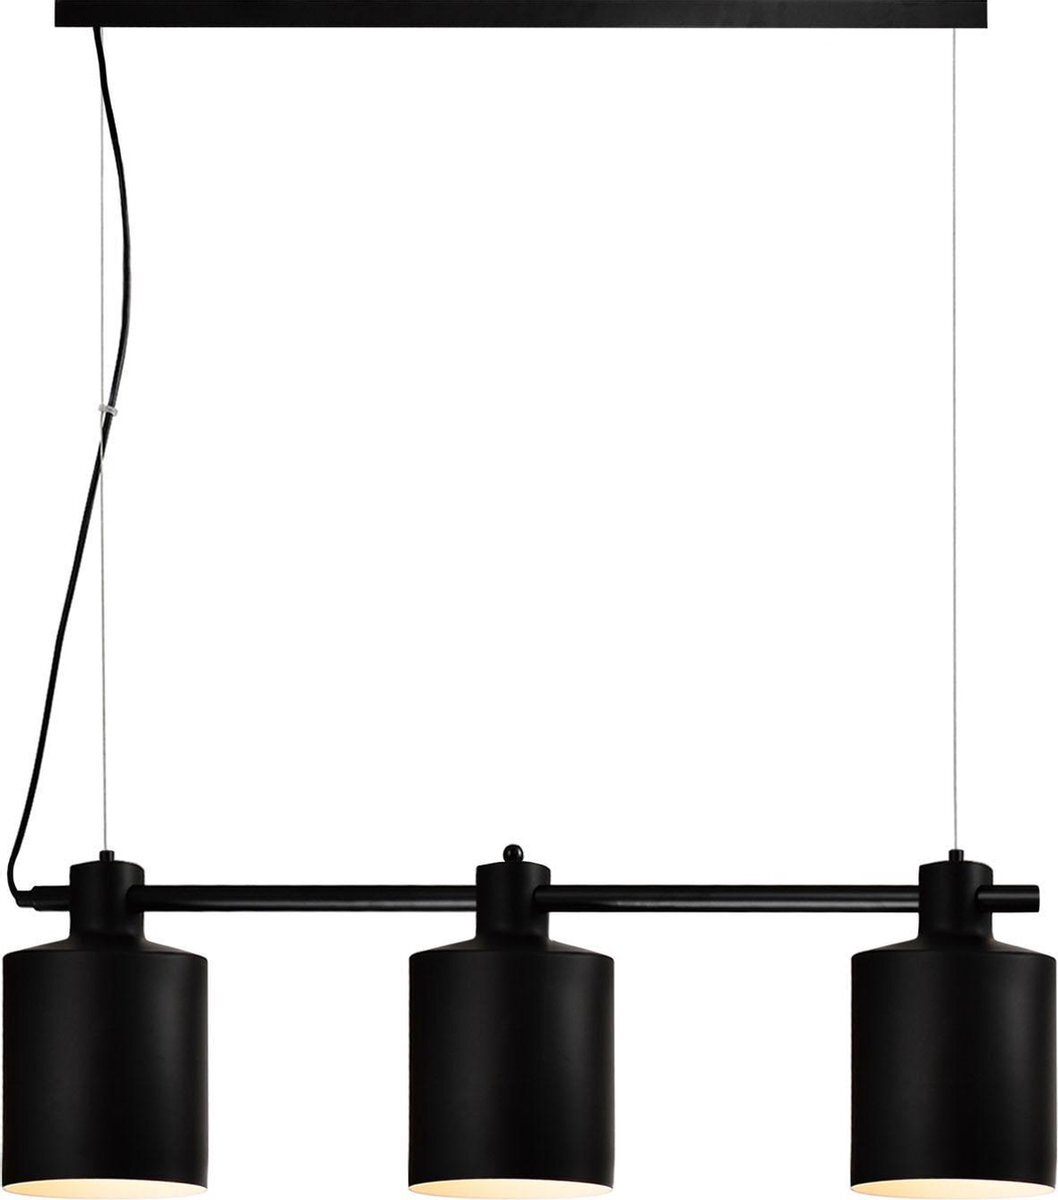 QUVIO Hanglamp modern / Plafondlamp / Sfeerlamp / Leeslamp / Eettafellamp / Verlichting / Slaapkamer lamp / Slaapkamer verlichting / Keukenverlichting / Keukenlamp - 3 lichtpunten met ronde kappen - 15,5 x 90 x 26 cm (lxbxh)